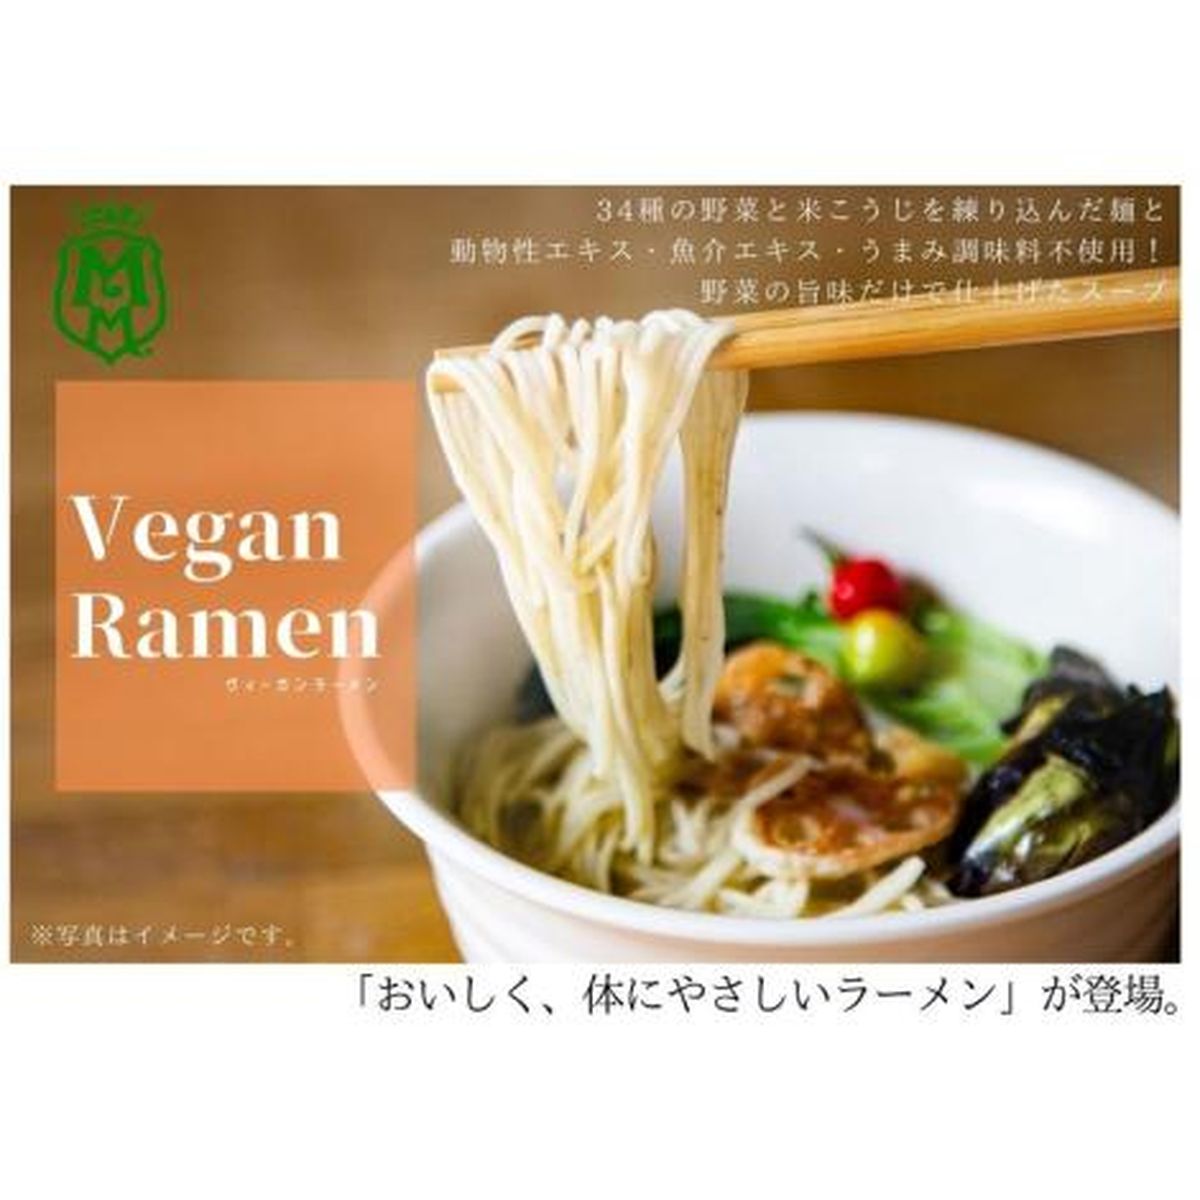 (野菜ソムリエ監修) 野菜34種・米こうじ入り麺と野菜の旨味たっぷりスープ ヴィーガンラーメン4種セット(MMR-025A)